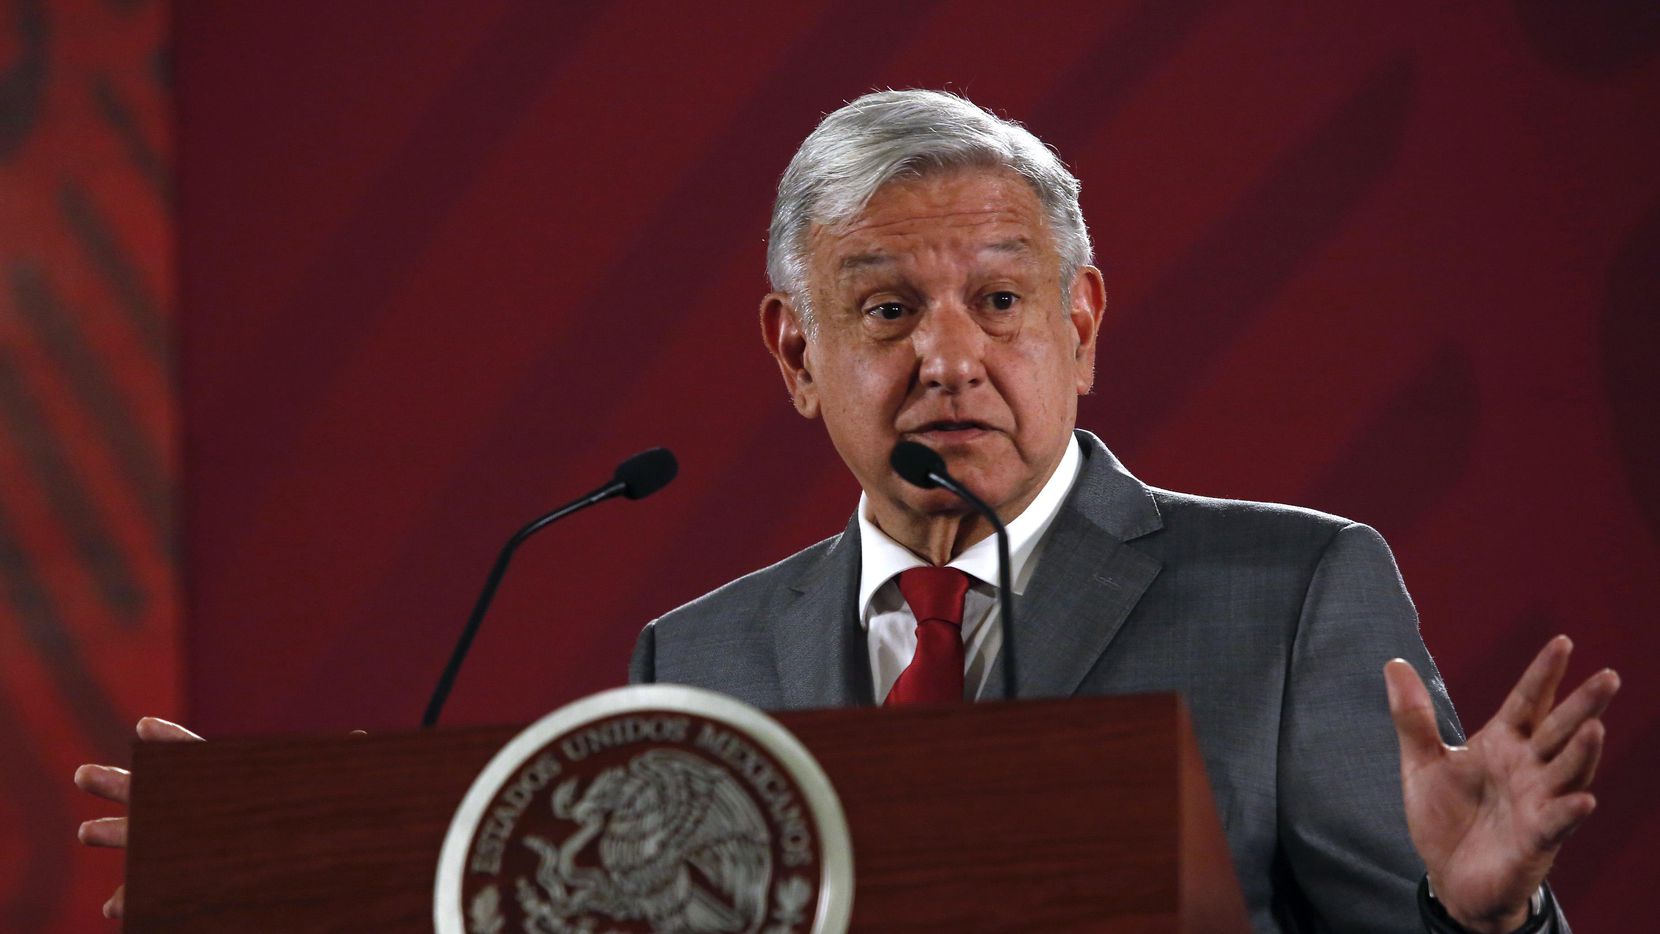 El presidente Andrés Manuel López Obrador habla en la conferencia de prensa del viernes en Palacio Nacional. (AP/Ginnette Riquelme)
